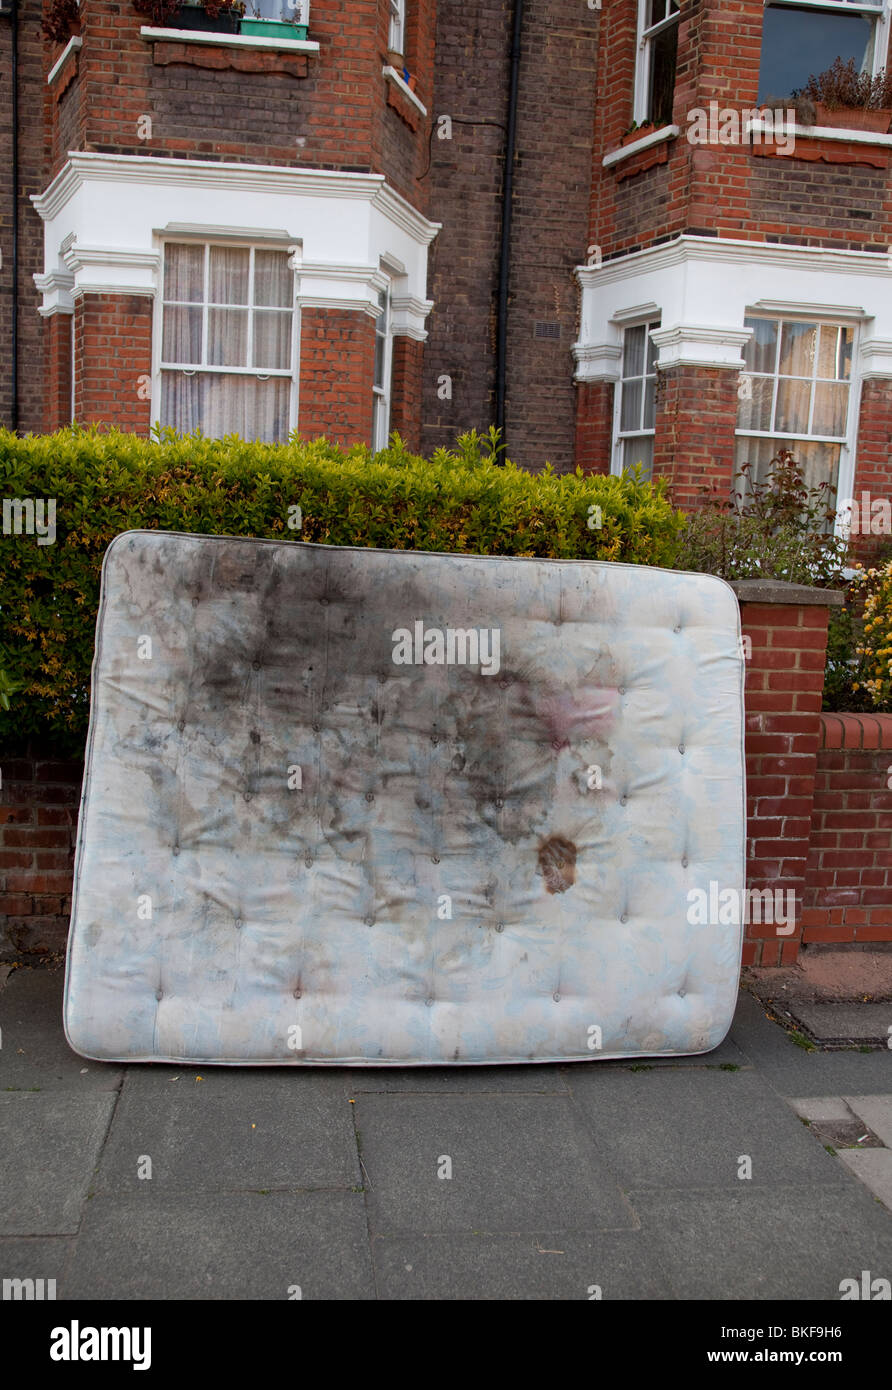 Matelas sale laissée dans une rue du nord de Londres Photo Stock - Alamy